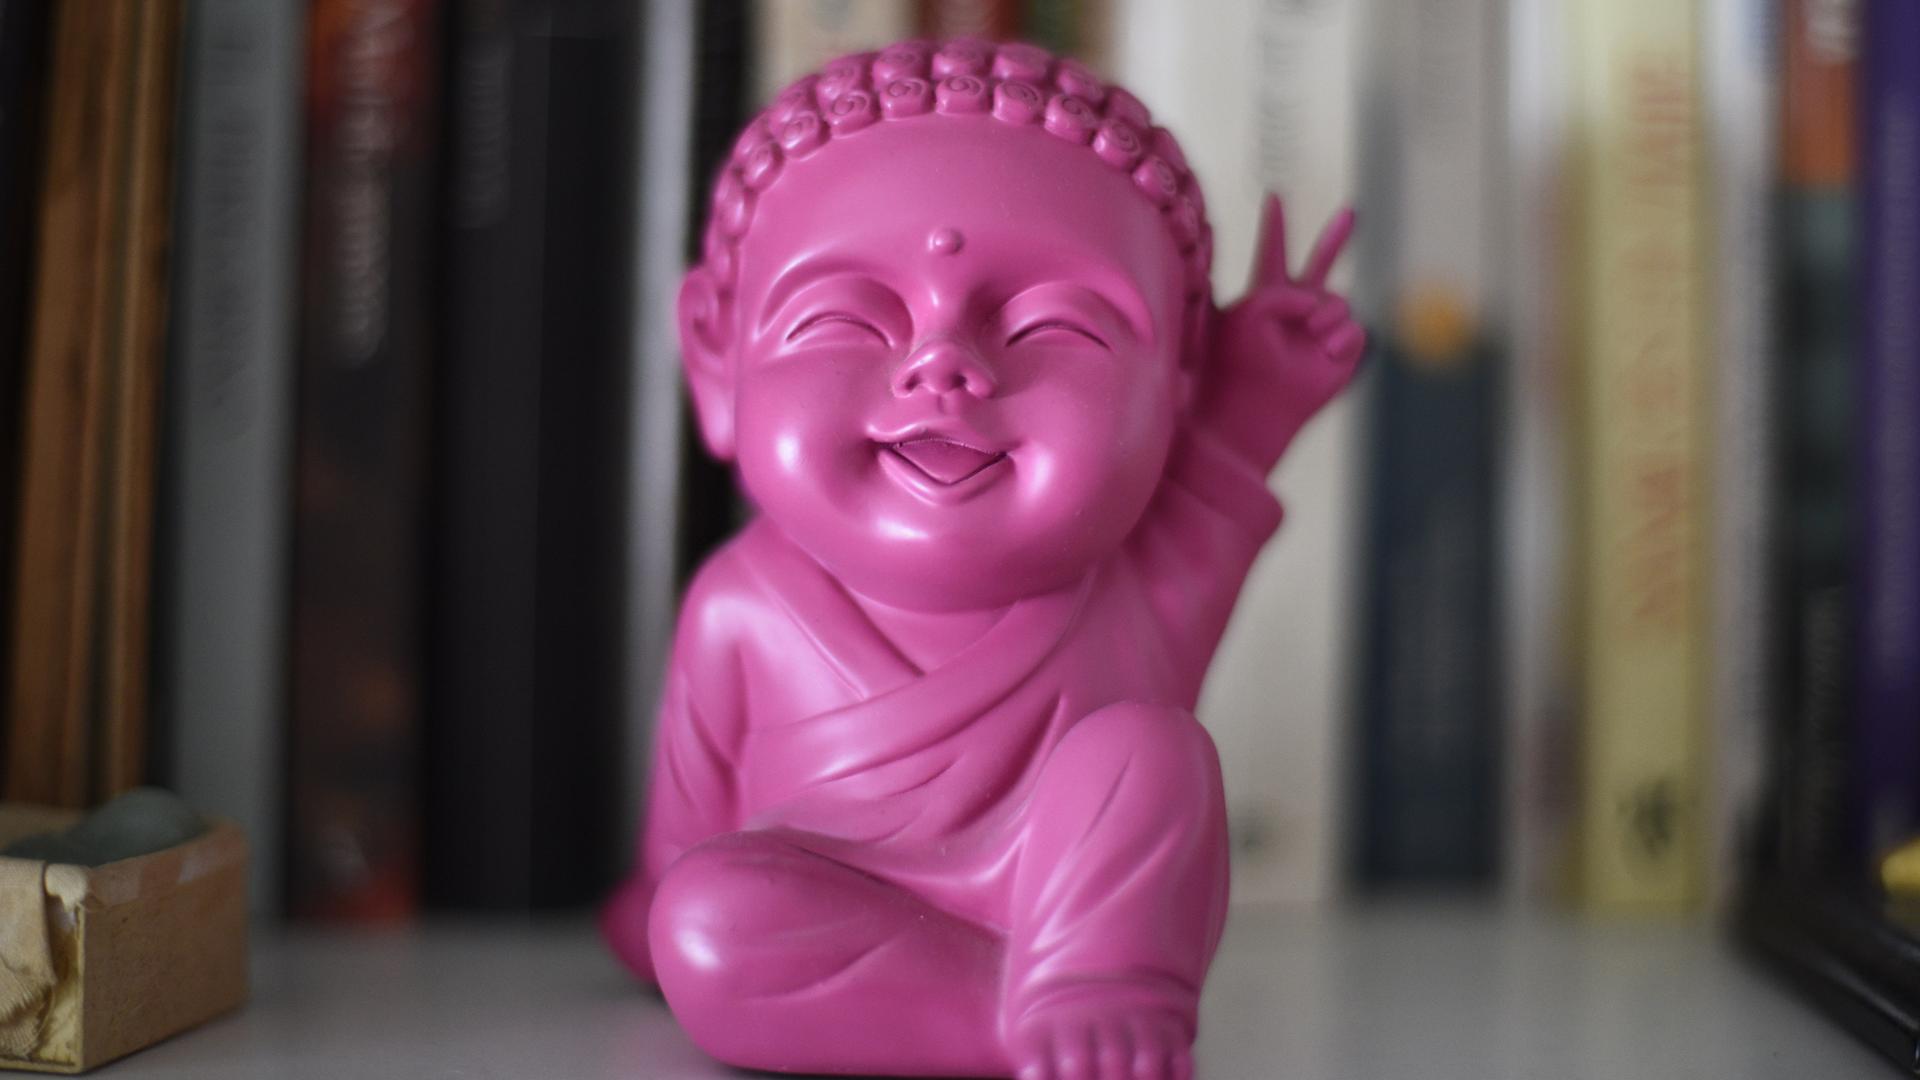 Close-Up auf eine pinke Buddha-Palstikfigur.